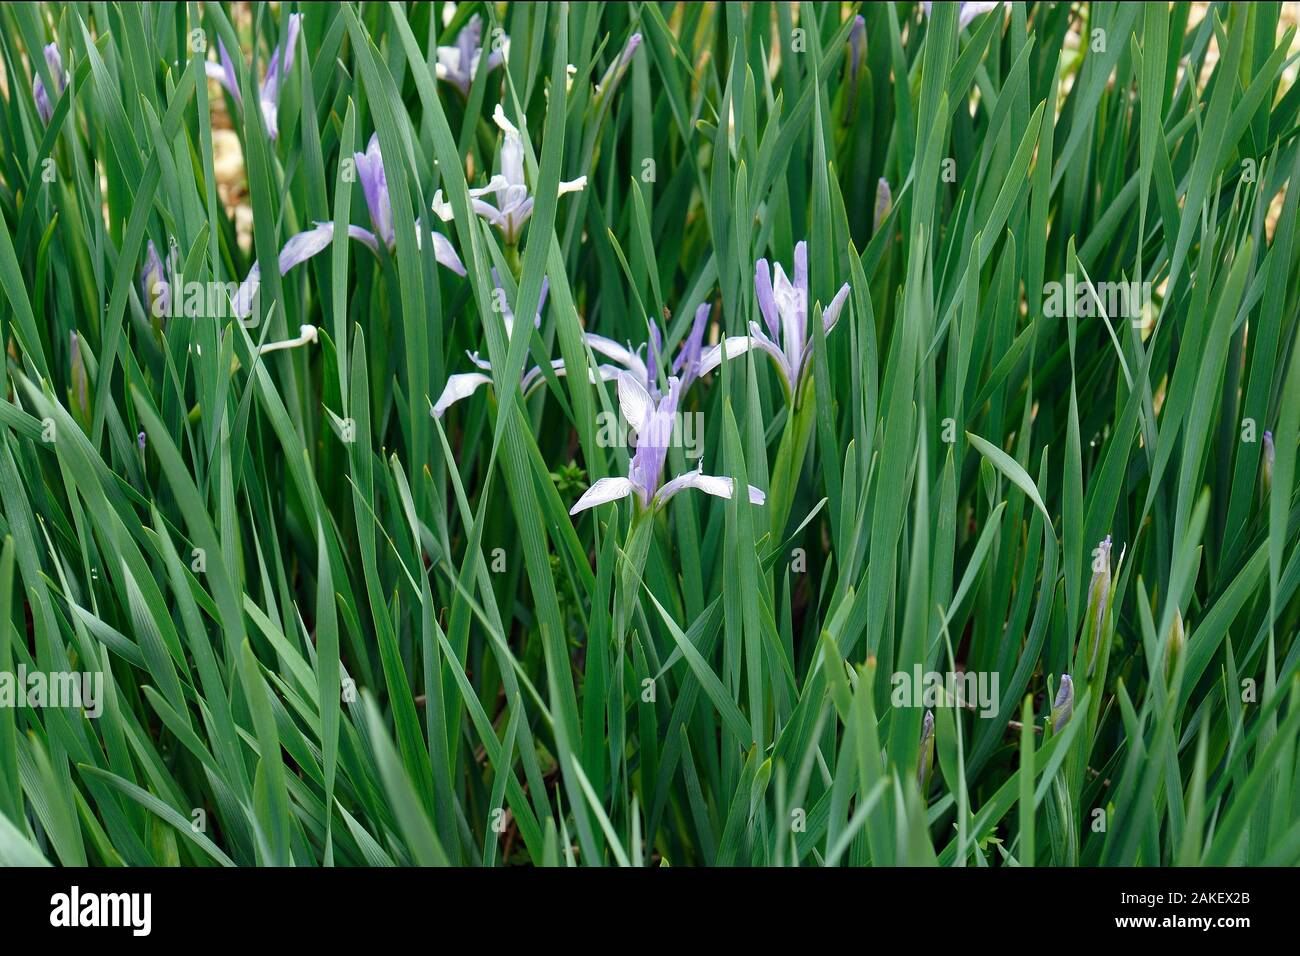 Lattiginoso (Iris Iris lactea). Chiamato fiore bianco anche iris. Foto Stock